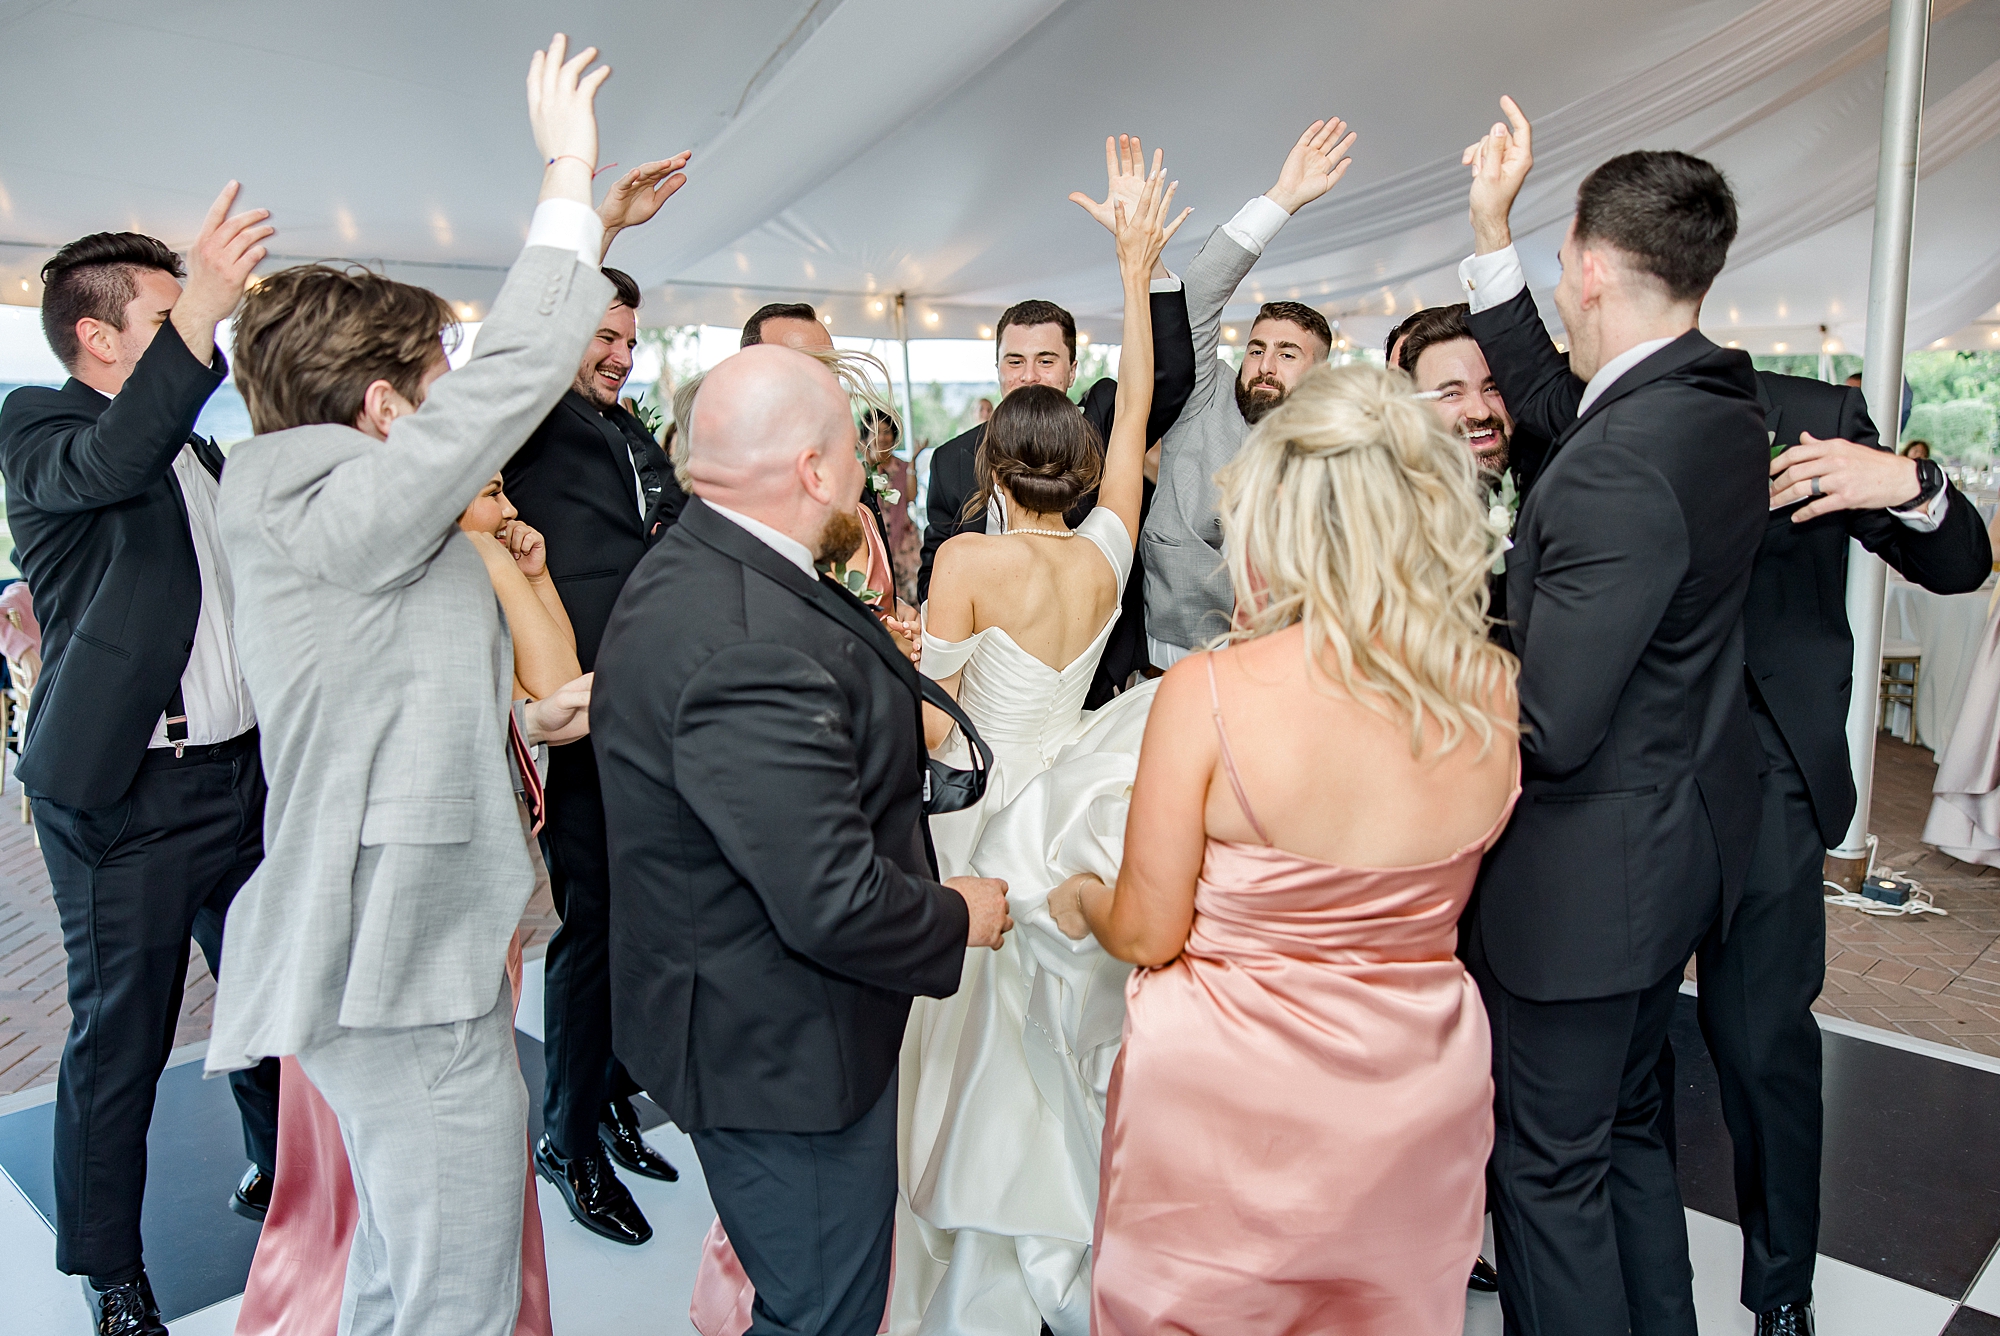 wedding guests surround bride and groom on dance floor